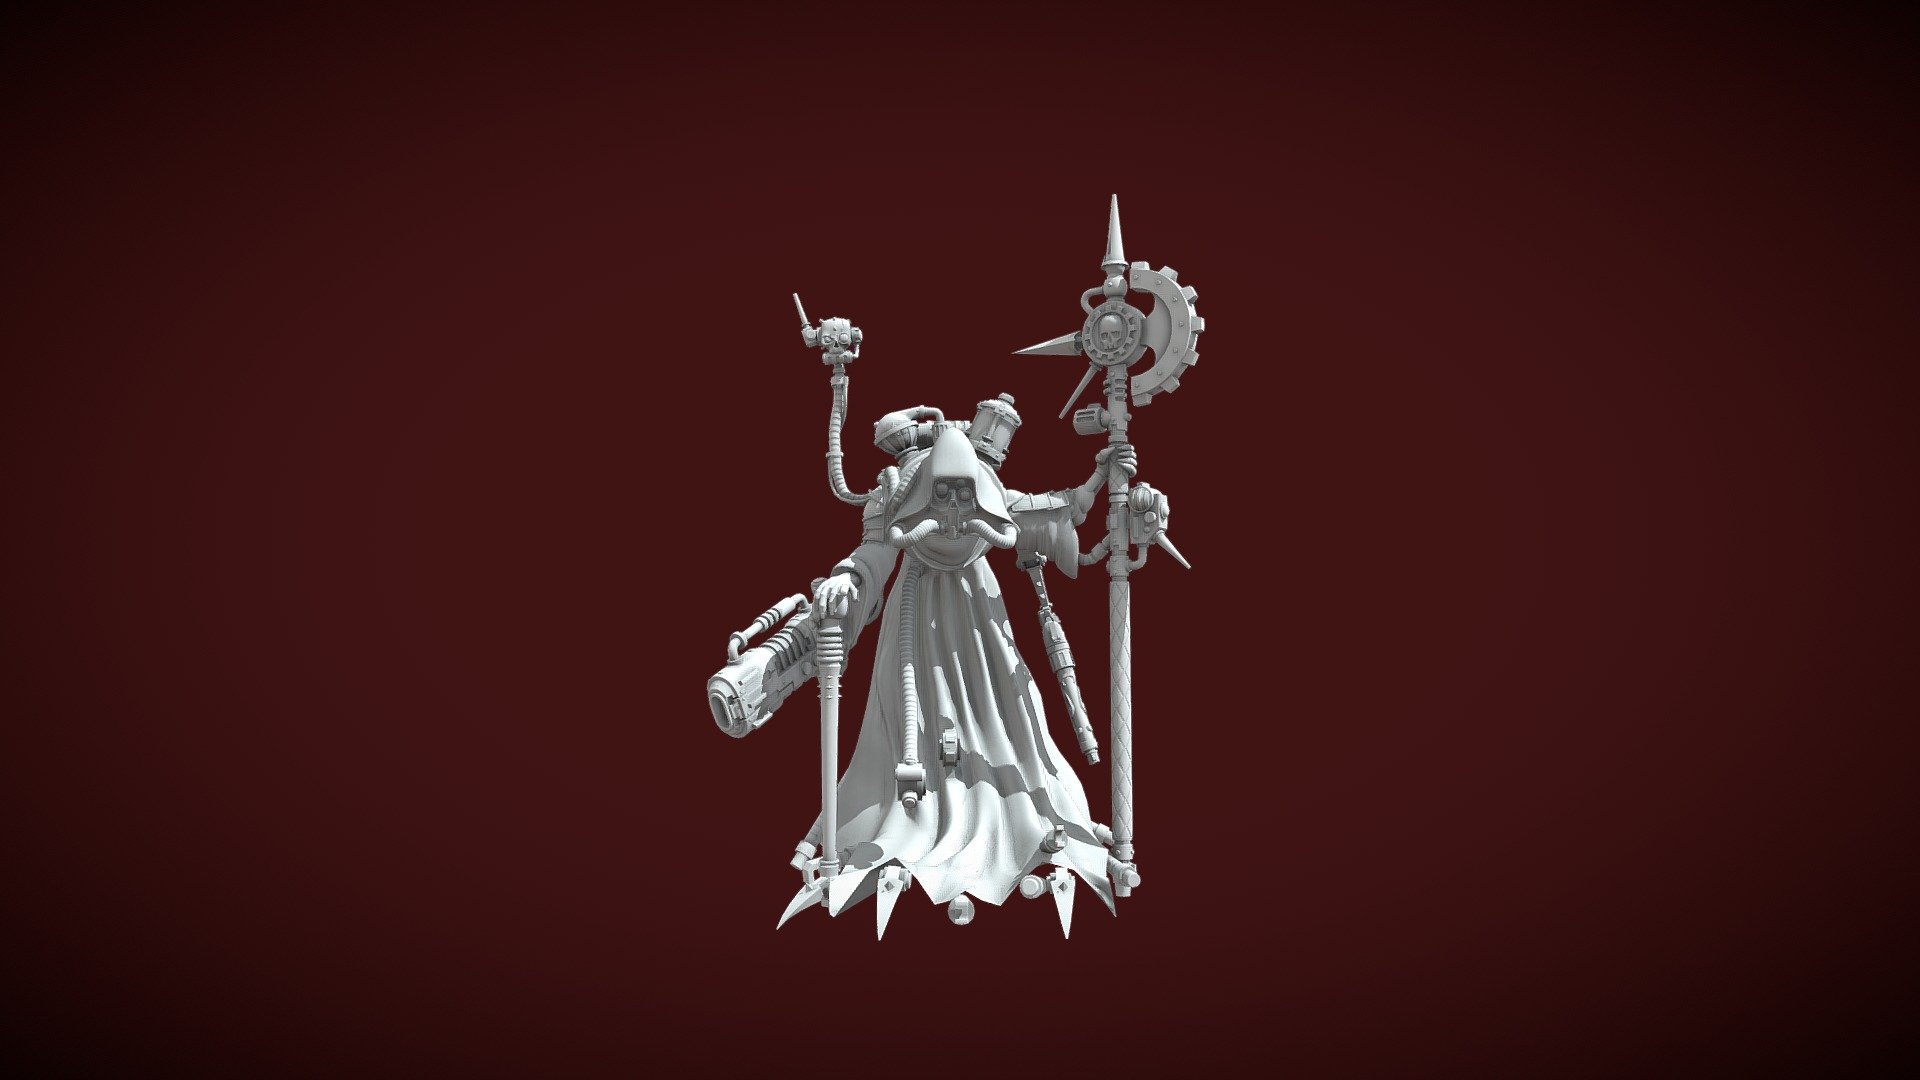 Warhammer 40.000 Tech-Priest (Fan Art) - 3D model by ArtemLarin (@Artem_Larin) 3d model